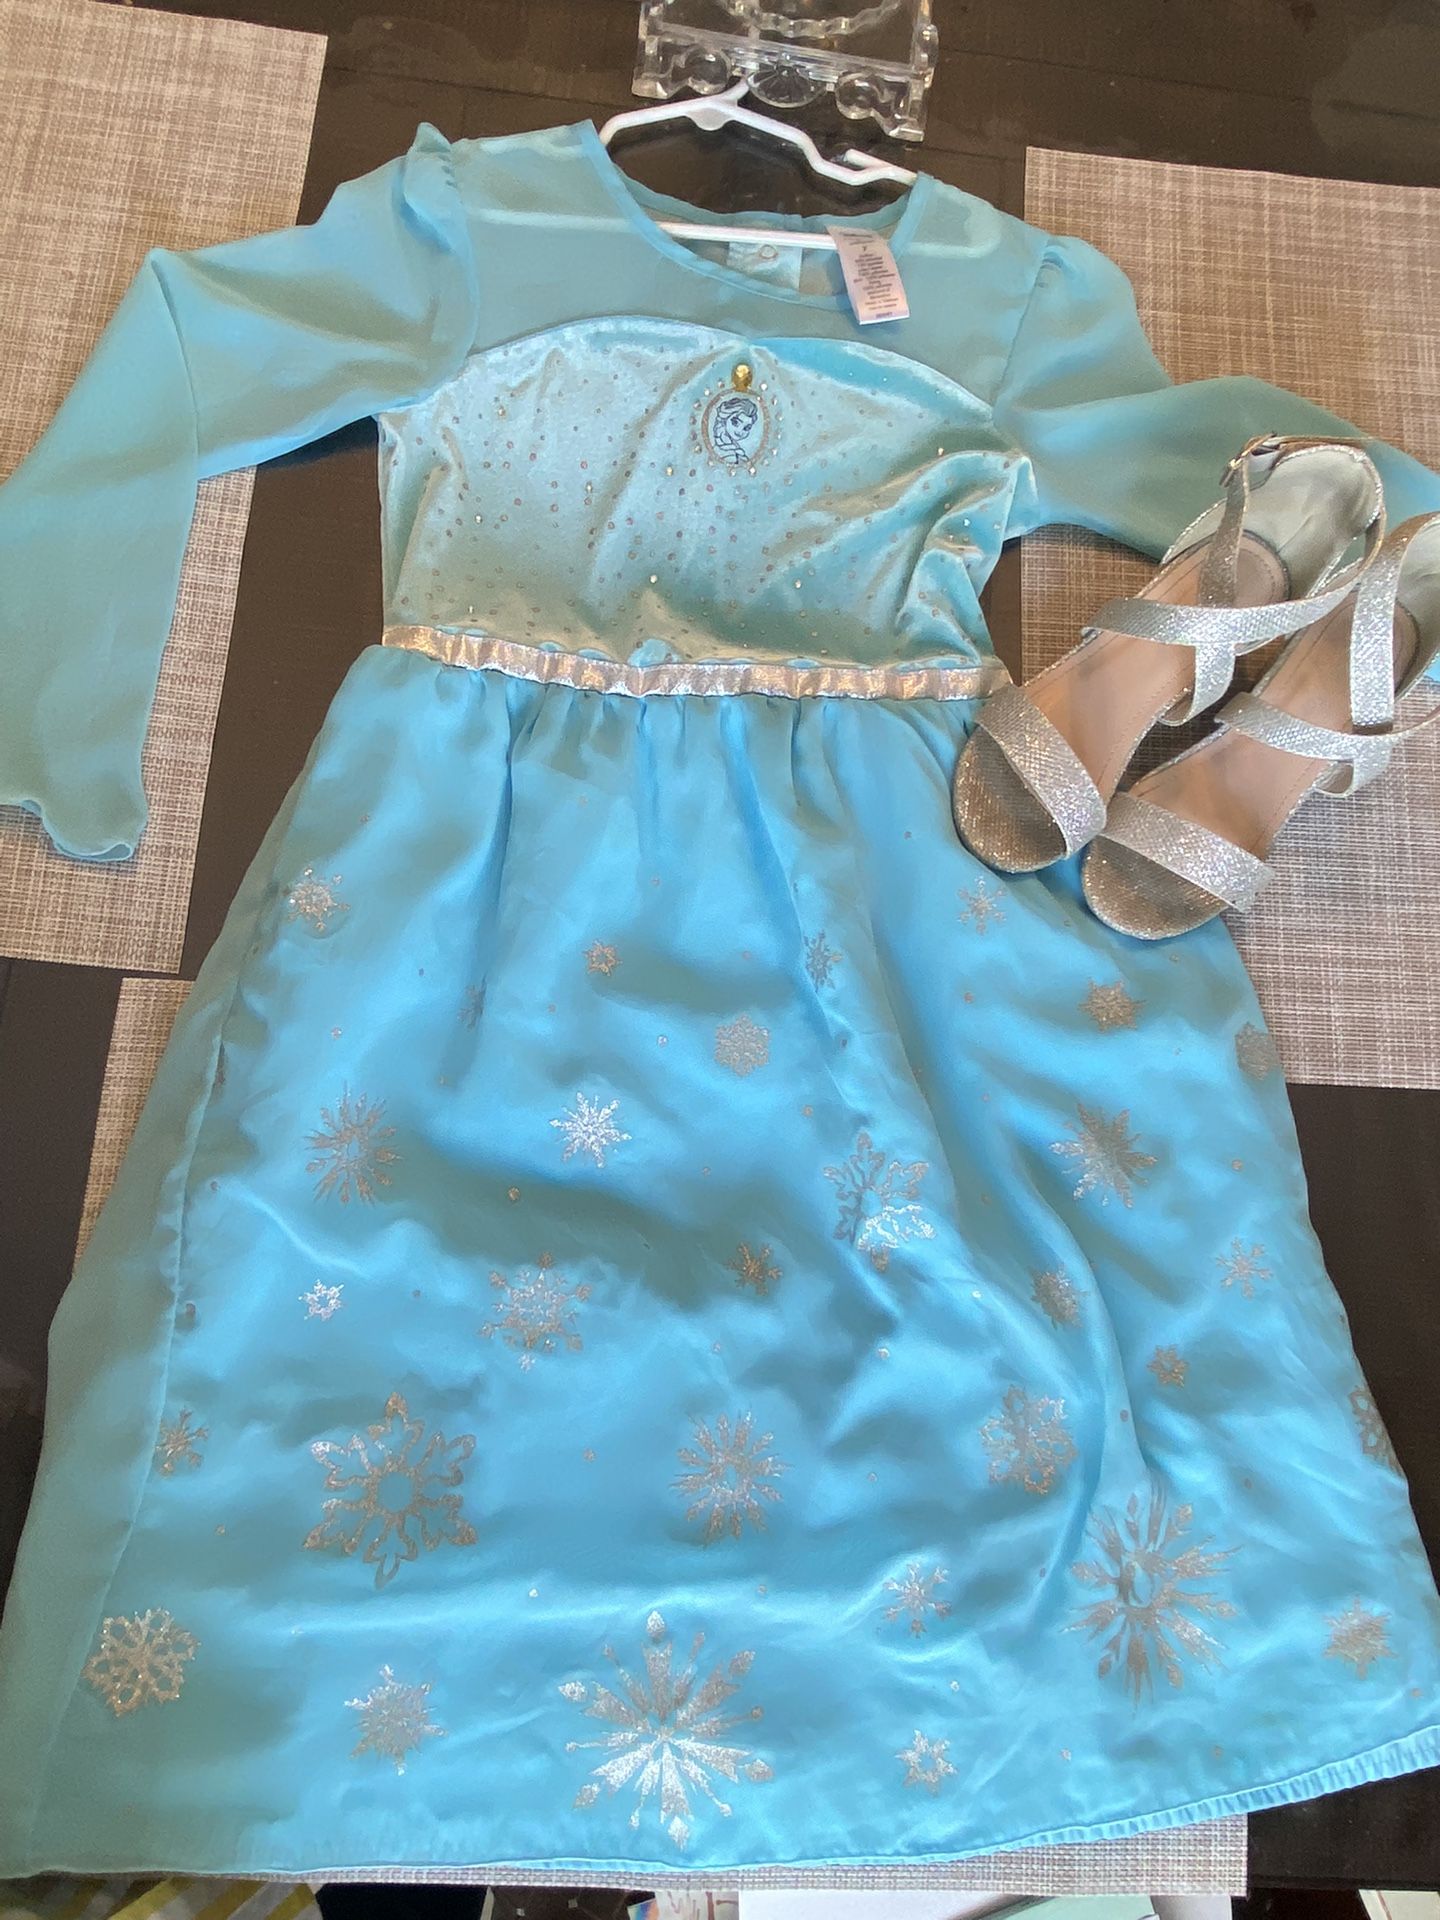 Costume Frozen Elsa Dress, Little Girl Size 7 Includes Shoes Size 12